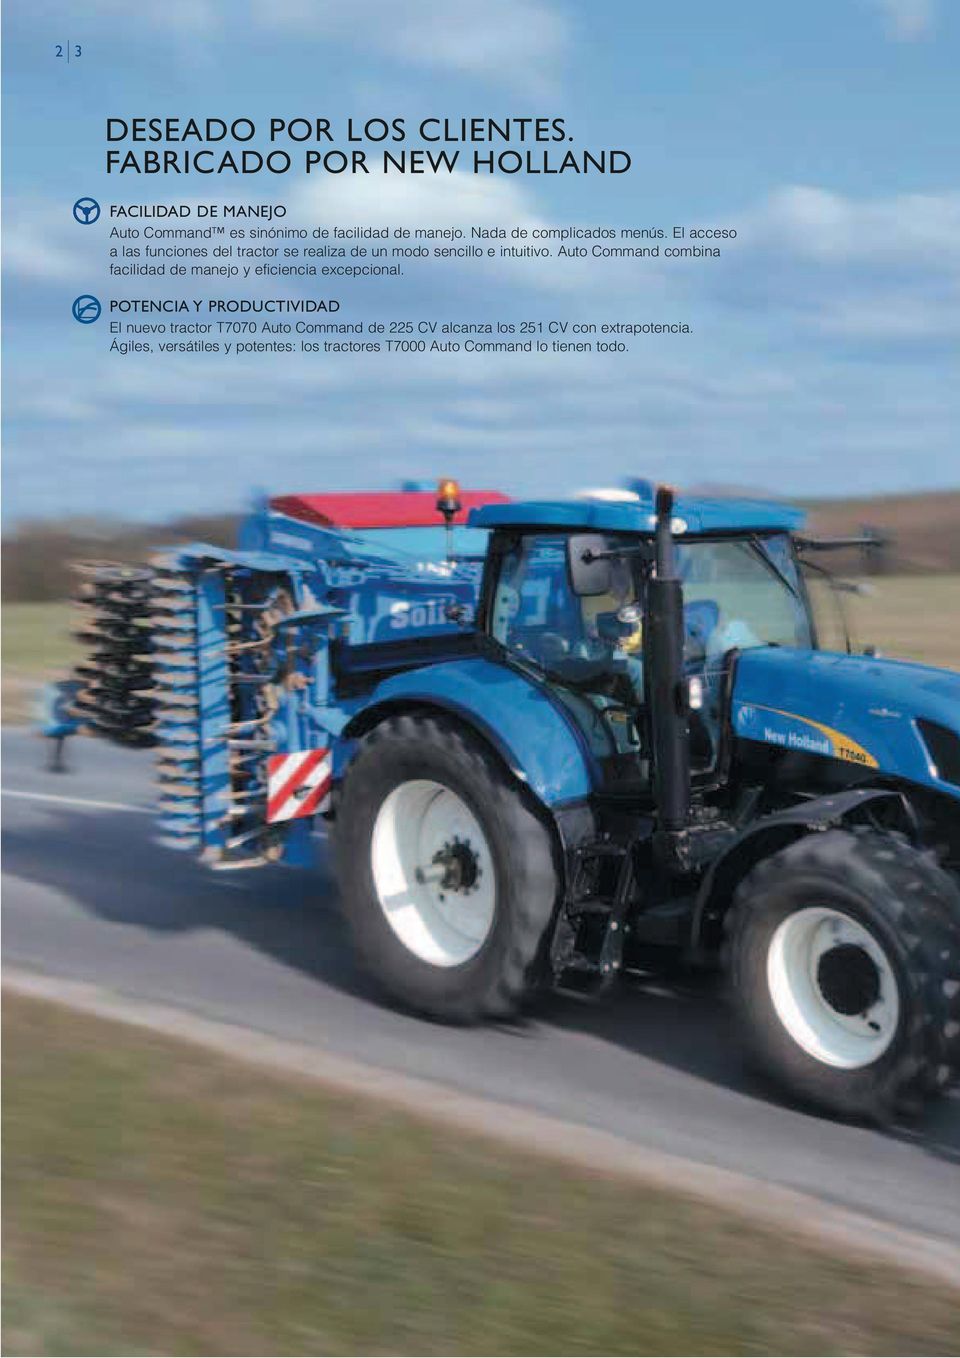 El acceso a las funciones del tractor se realiza de un modo sencillo e intuitivo.